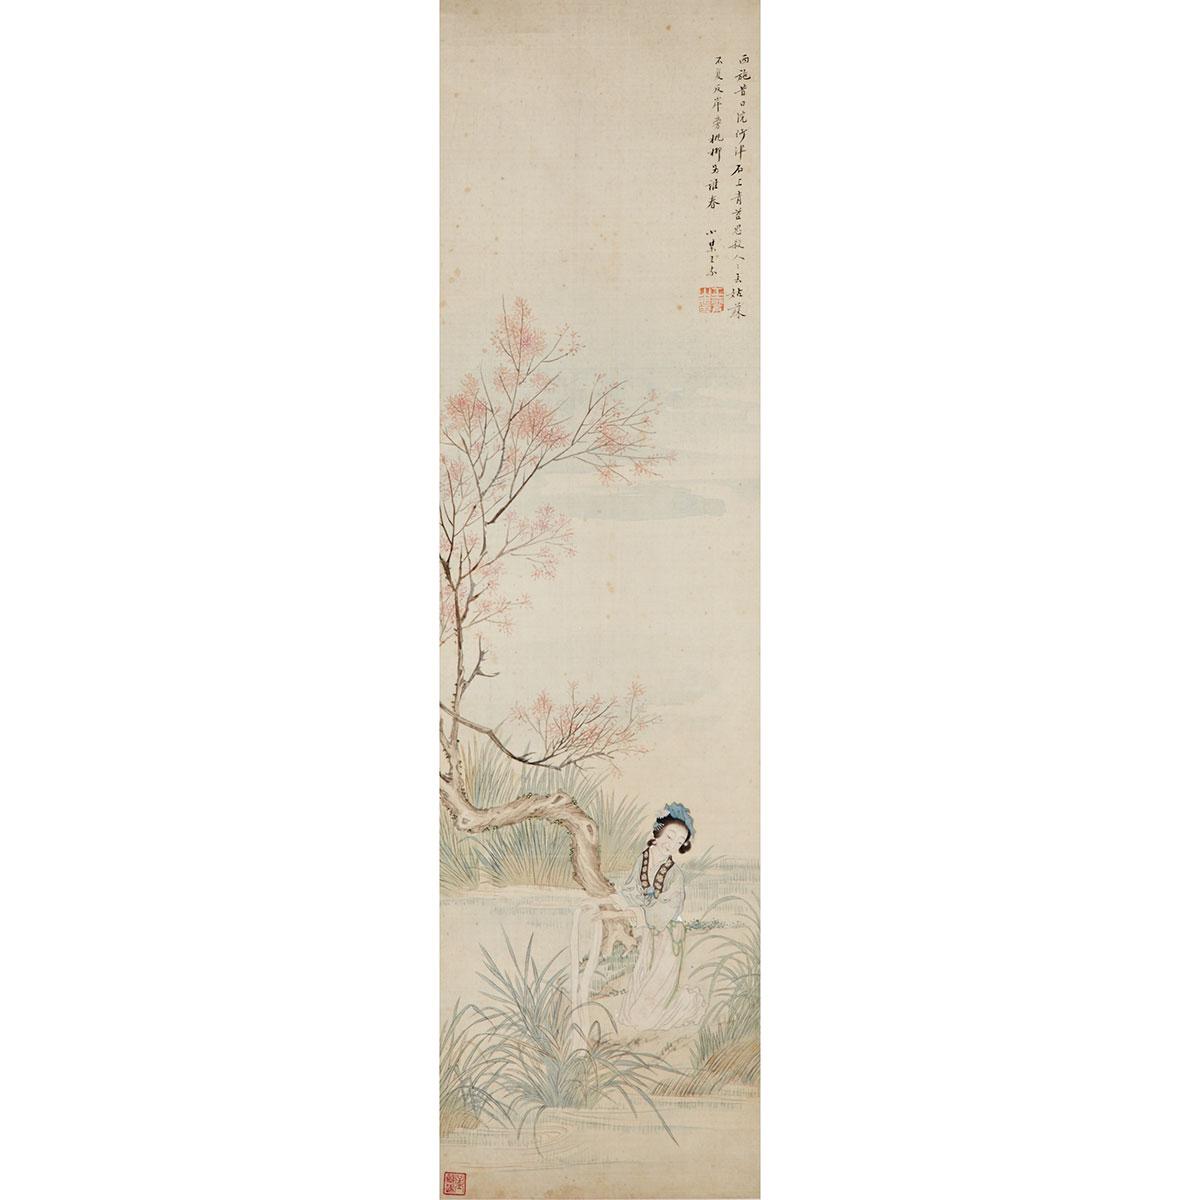 After Wang Su (1794-1877)